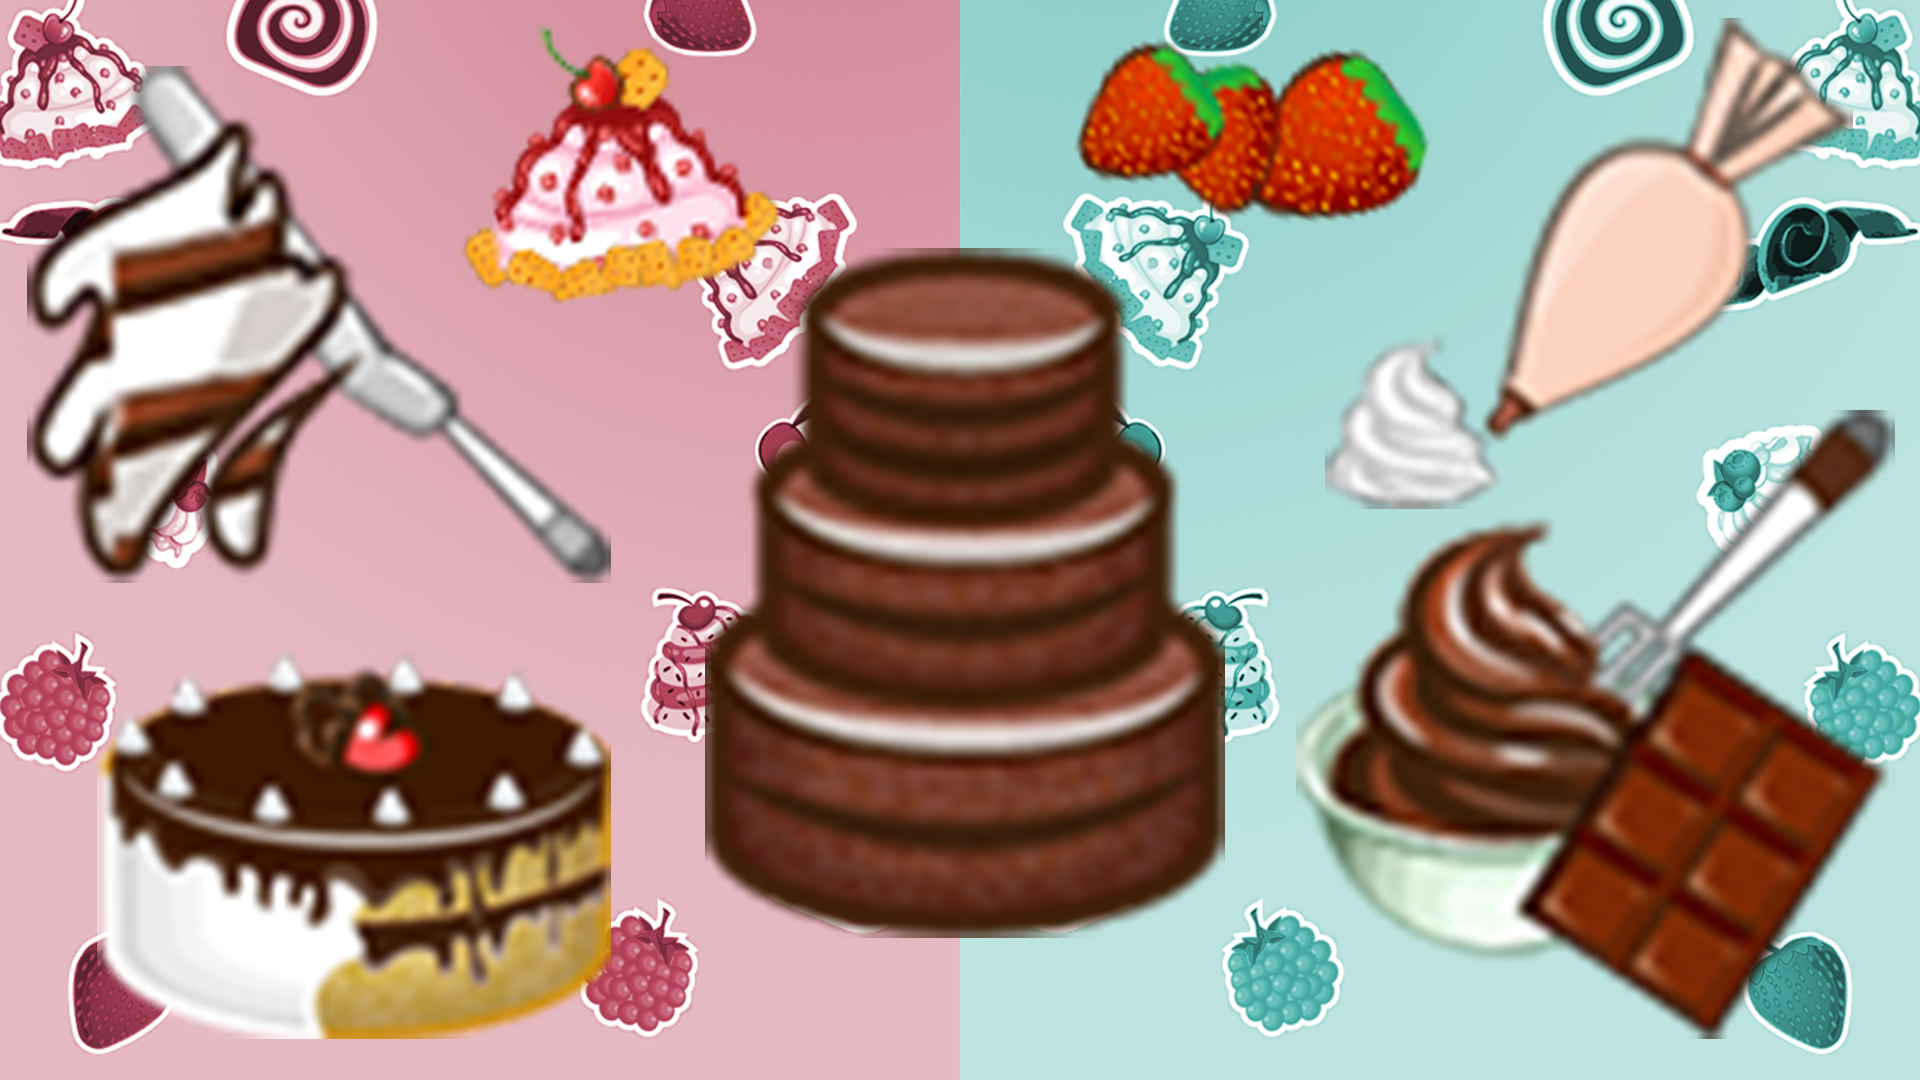 Make Cake : Cooking Games